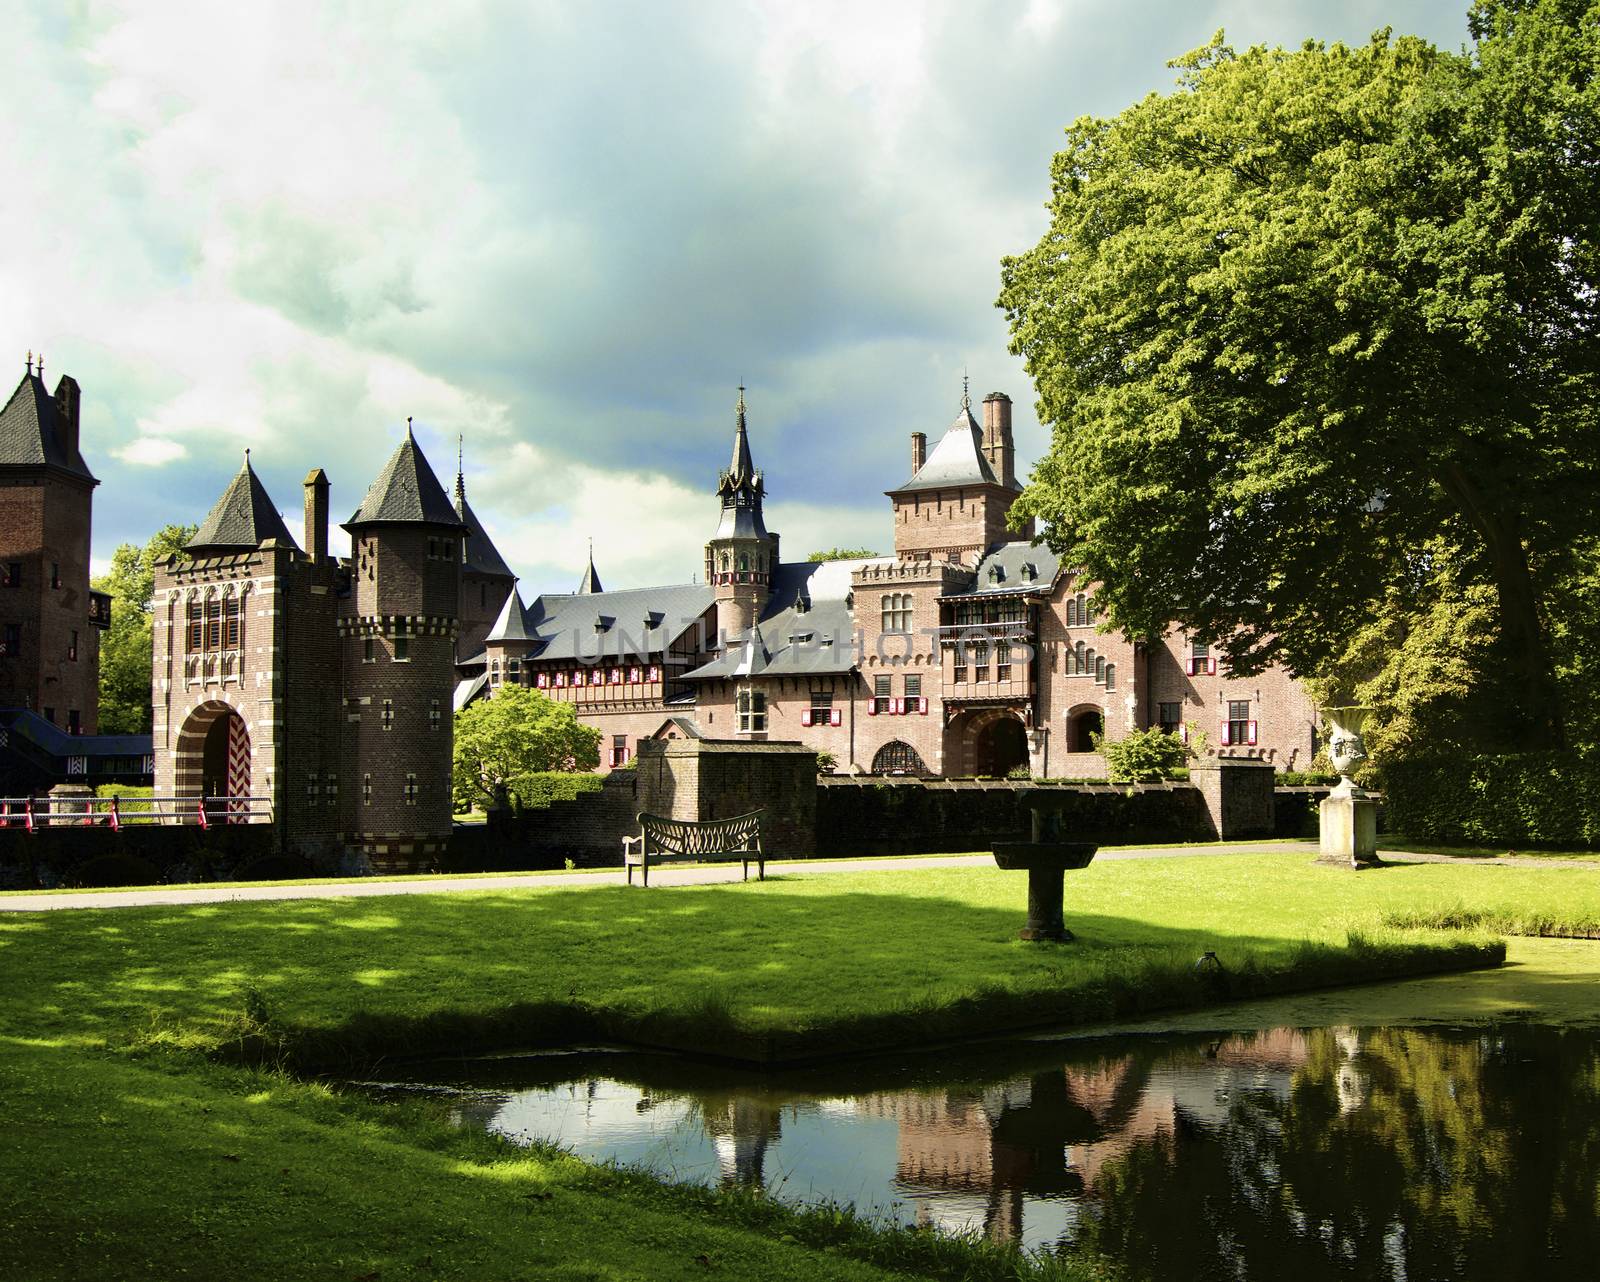 Medieval Castle de Haar by zhekos